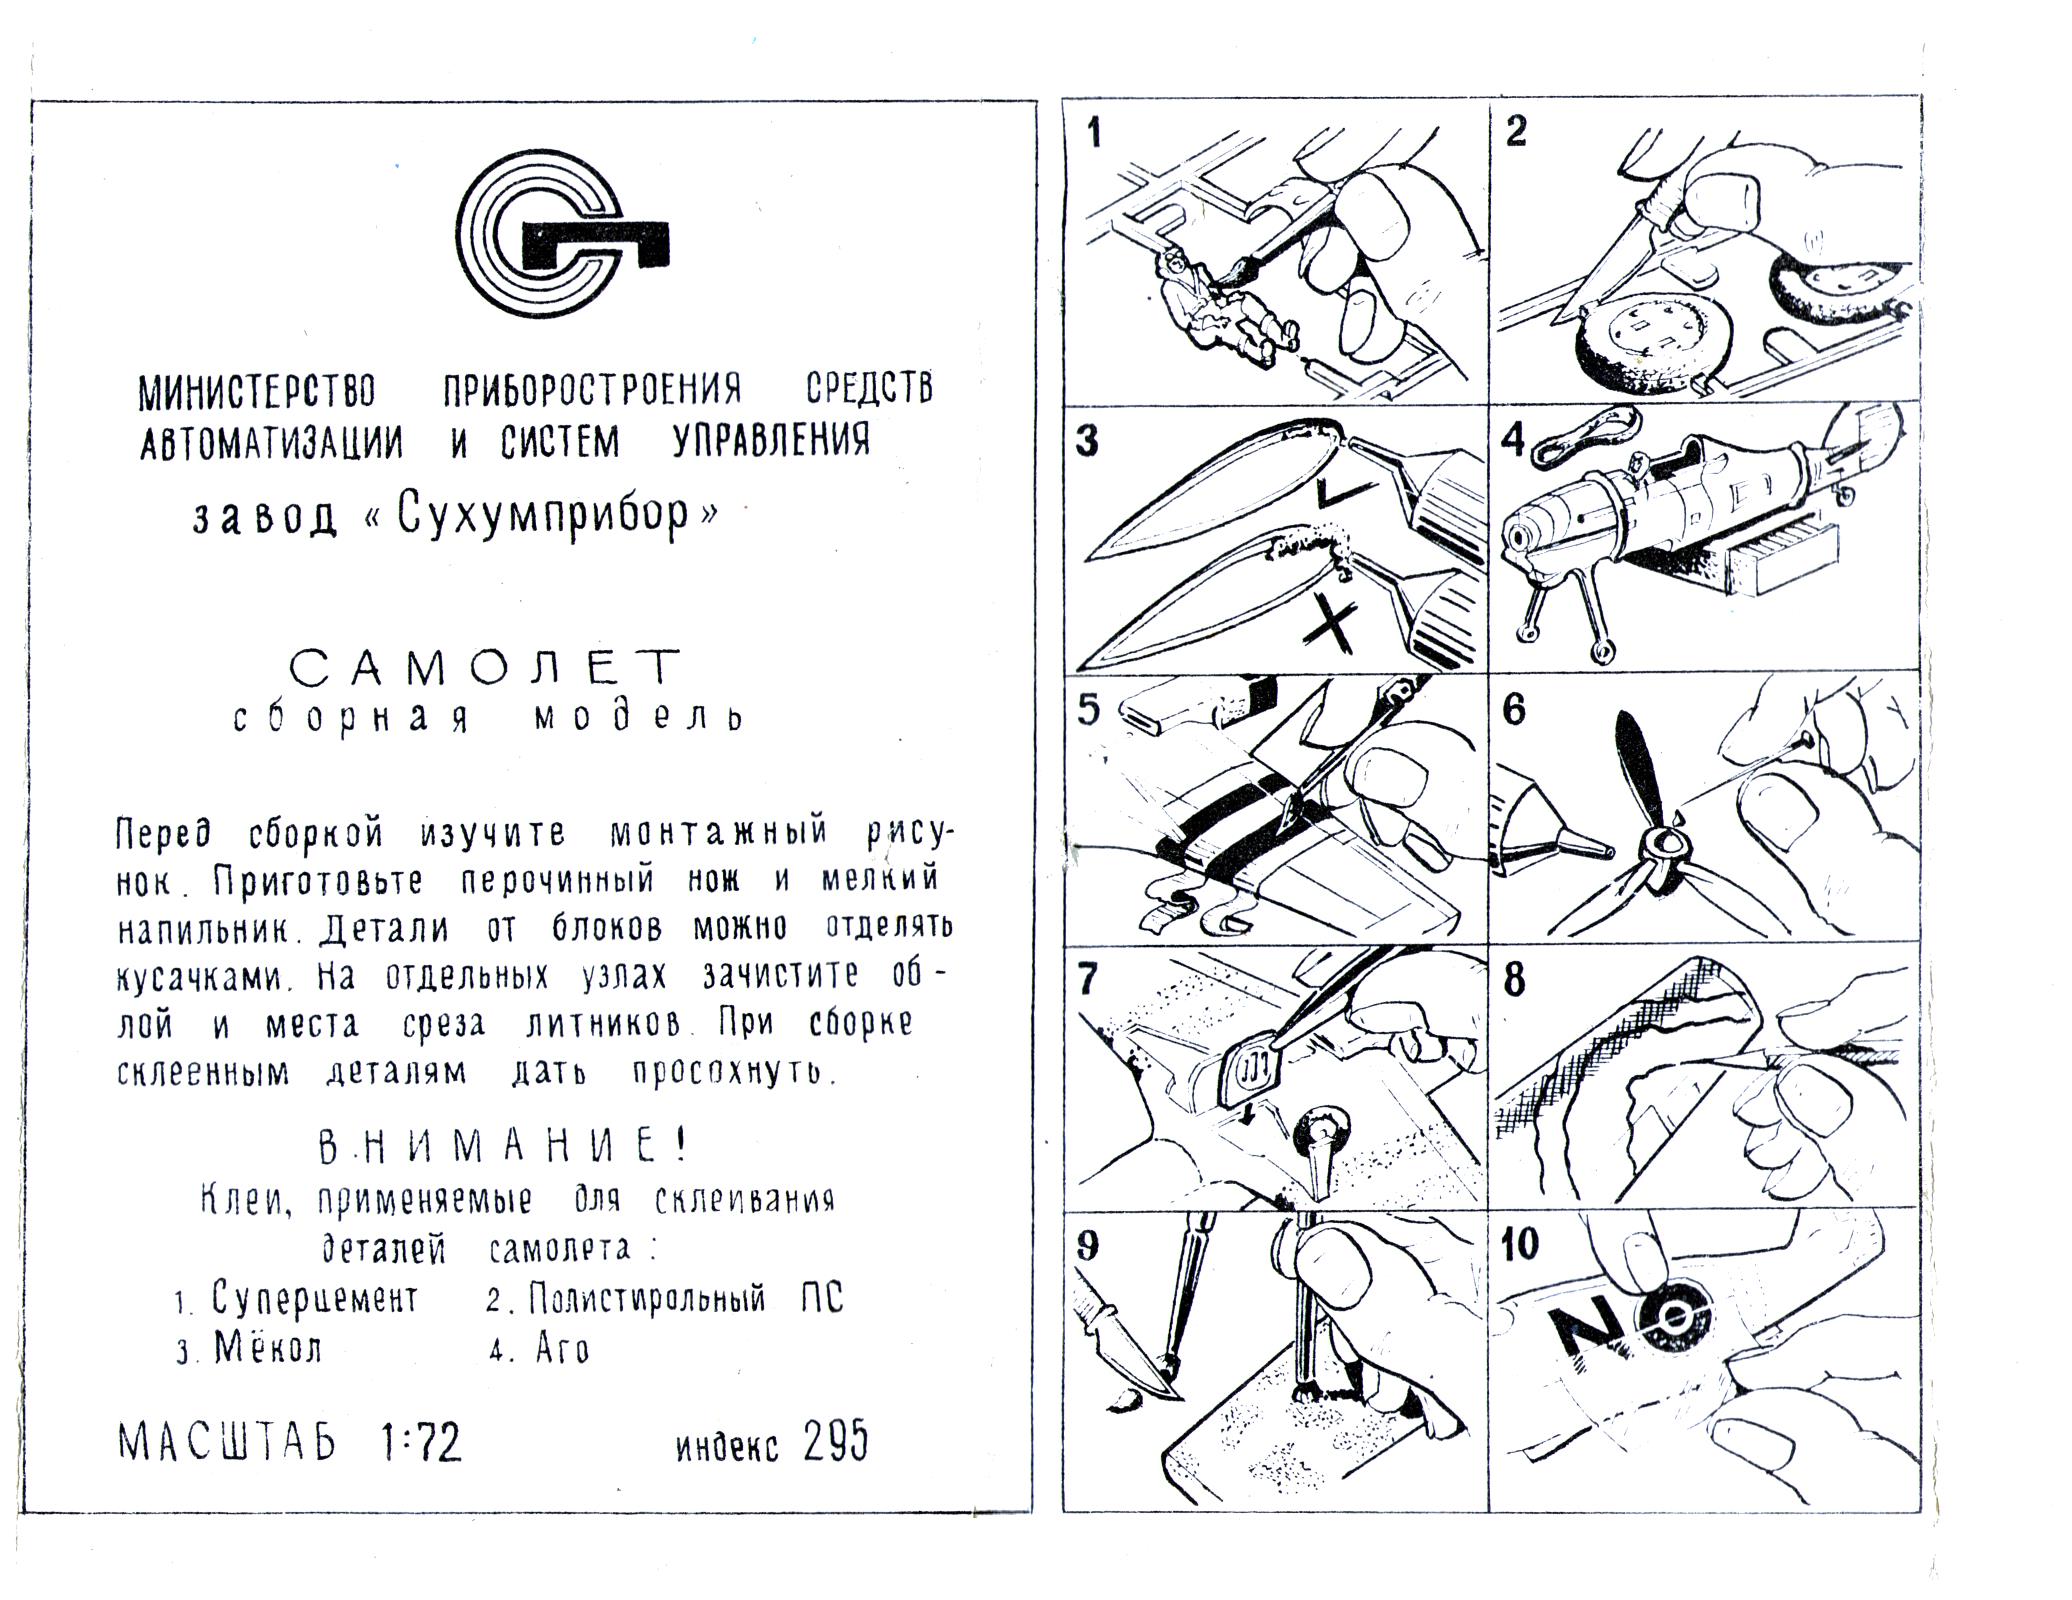 Инструкция Сборная модель самолёта Ф295, Sukhumi, Abkhaz ASSR, middle 80-s